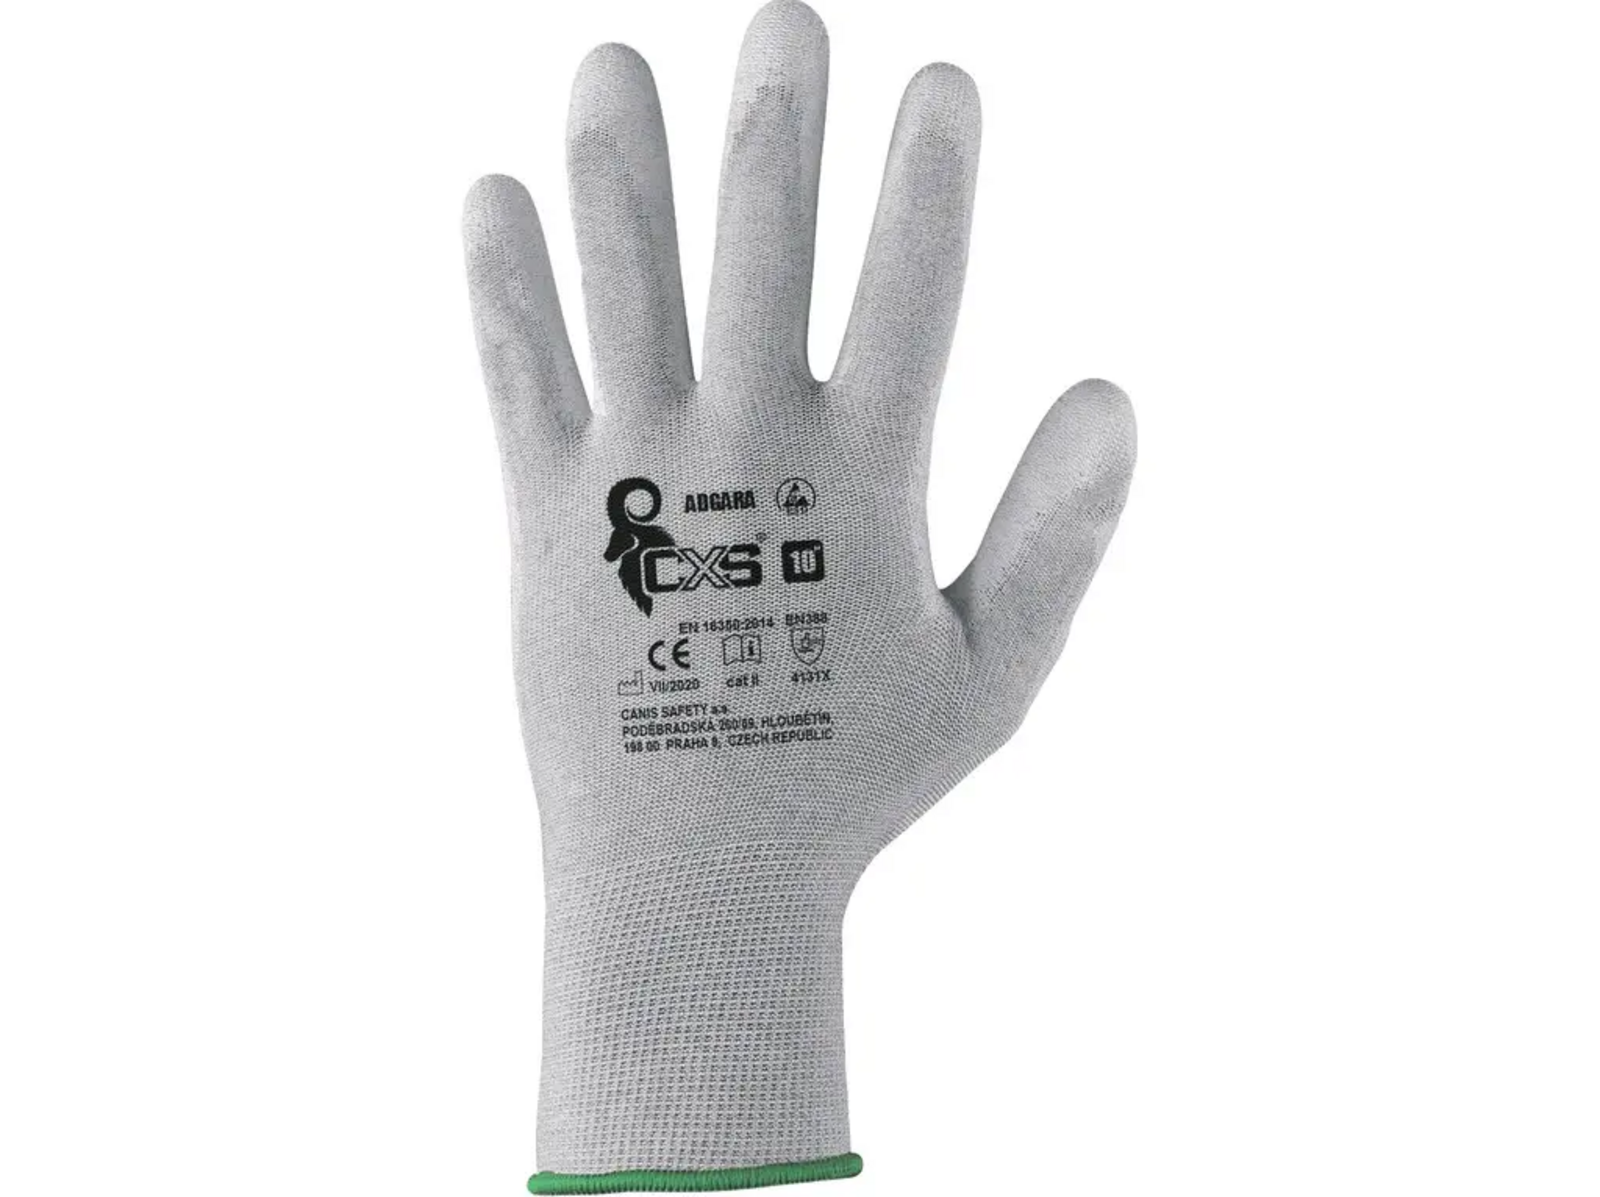 Povrstvené antistatické rukavice CXS Adgara - veľkosť: 8/M, farba: sivá